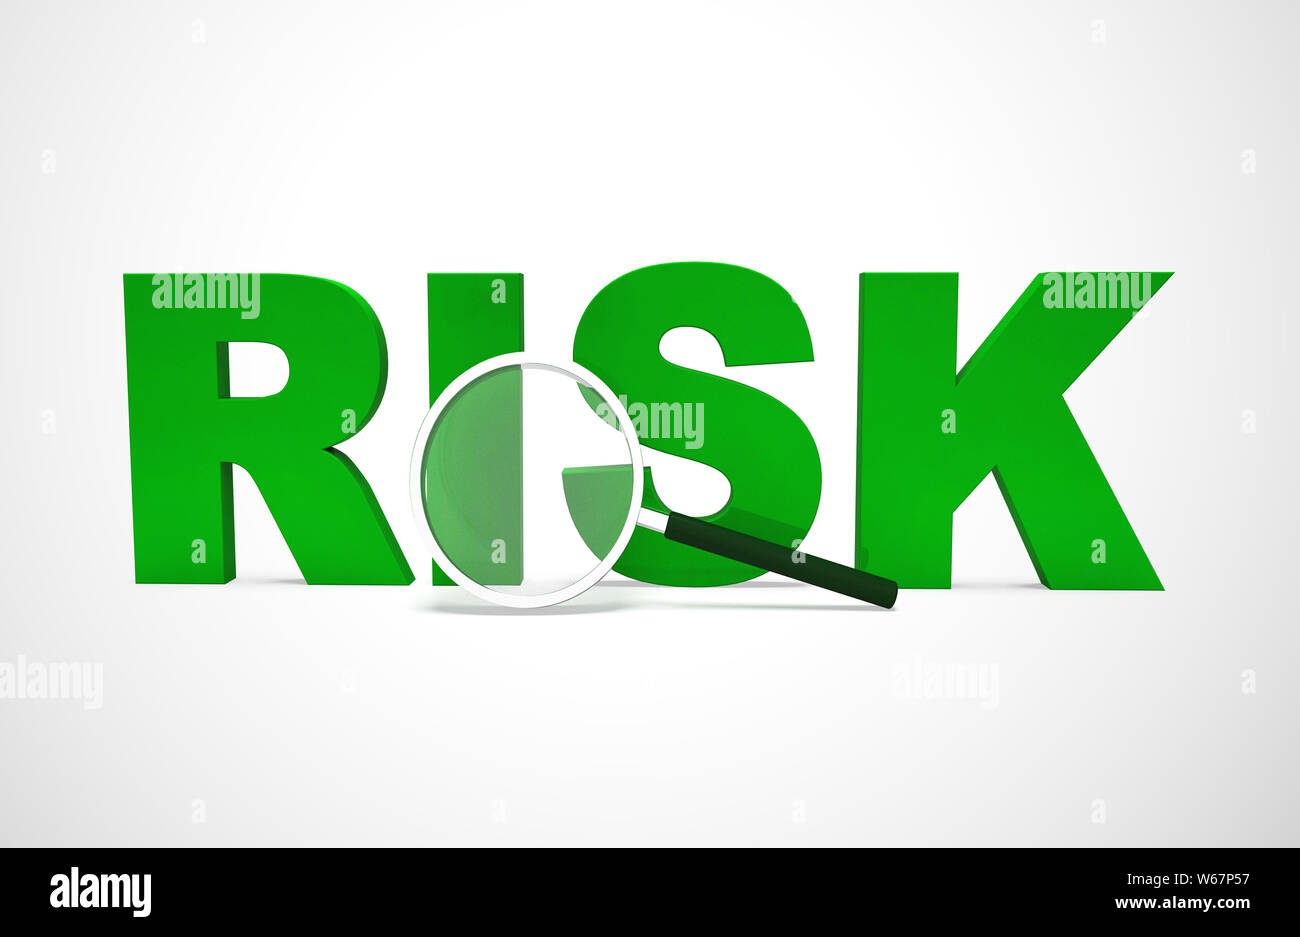 Risk management Symbol Konzept bedeutet Schadensbegrenzende gegen Gefahren und Bedrohungen. Umgang mit wahrgenommenen Bedrohungen oder gefährdeten Fallstricke - 3D-Darstellung Stockfoto